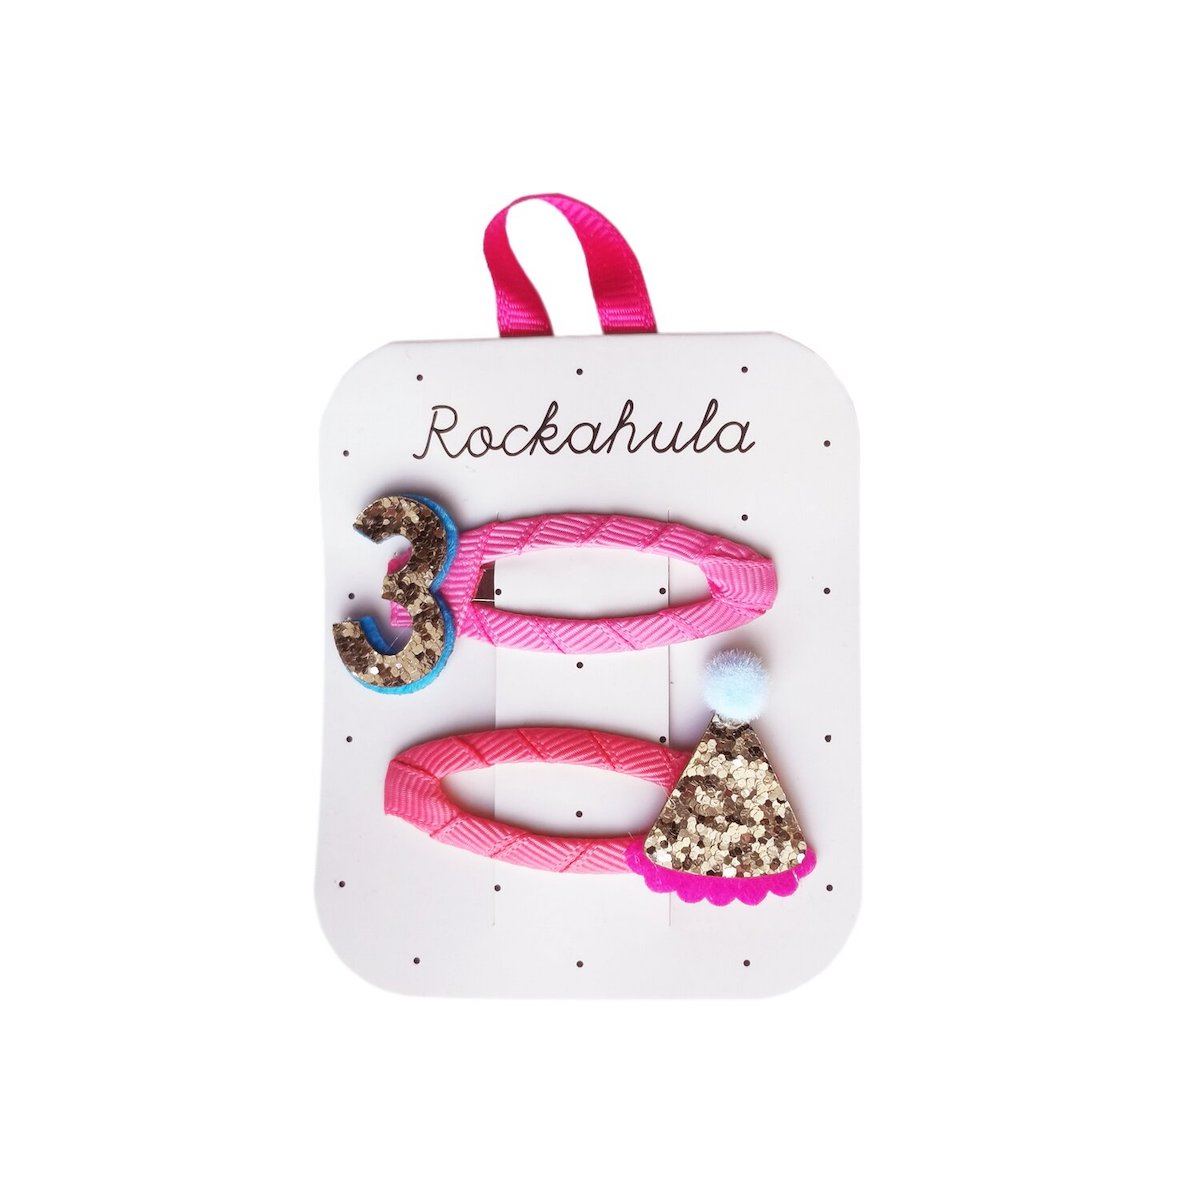 Wordt jouw kindje 3 jaar? Dan mogen de verjaardag speldjes van Rockahula niet ontbreken. De set bestaat uit 2 speldjes, versierd met roze grosgrain lint, het cijfers 3 en een feesthoedje, met vrolijke glitters. VanZus